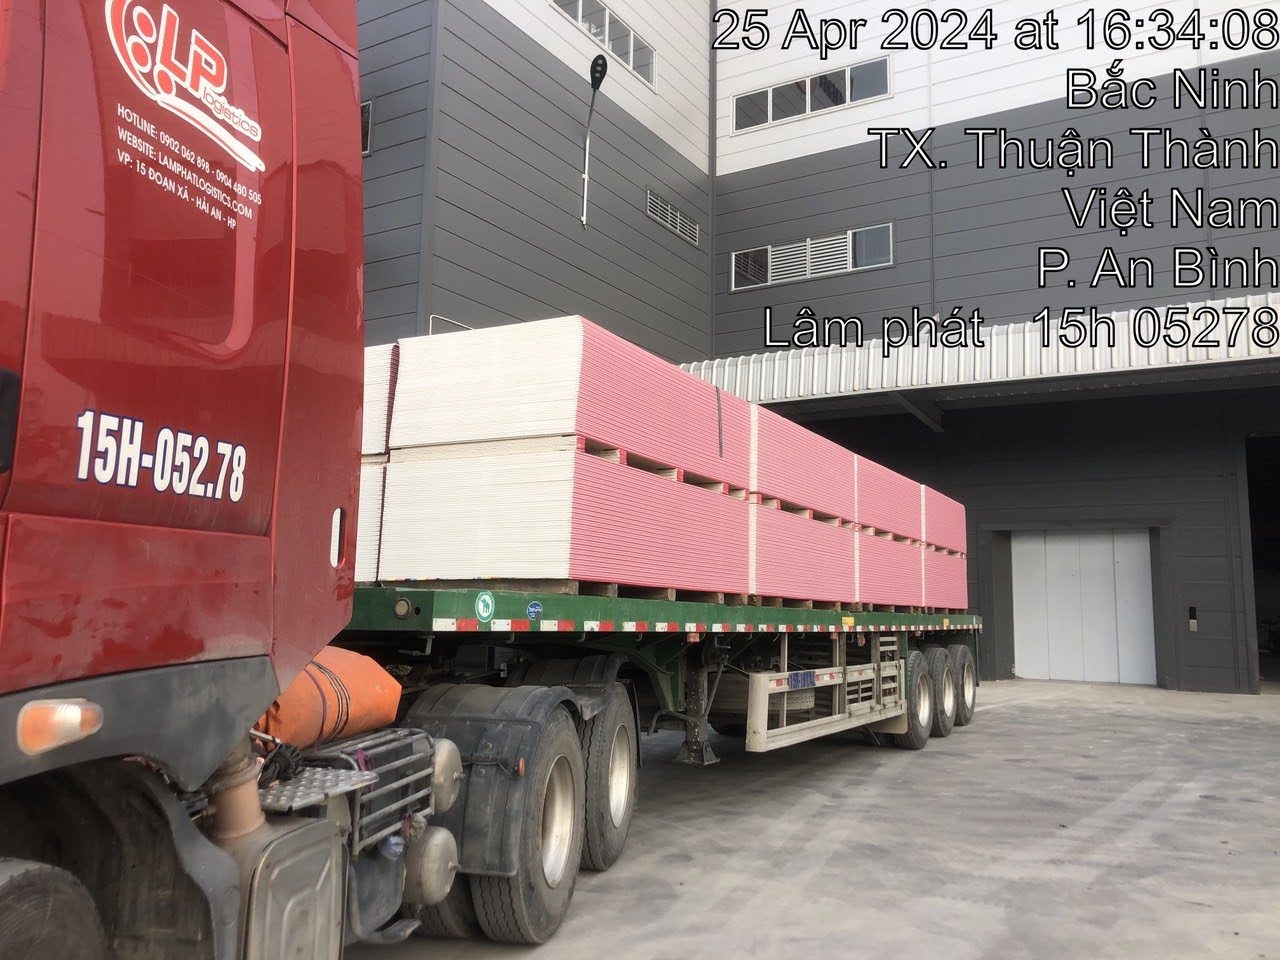 Dịch vụ vận tải hàng tấm thạch cao đảm bảo an toàn của Lâm Phát.